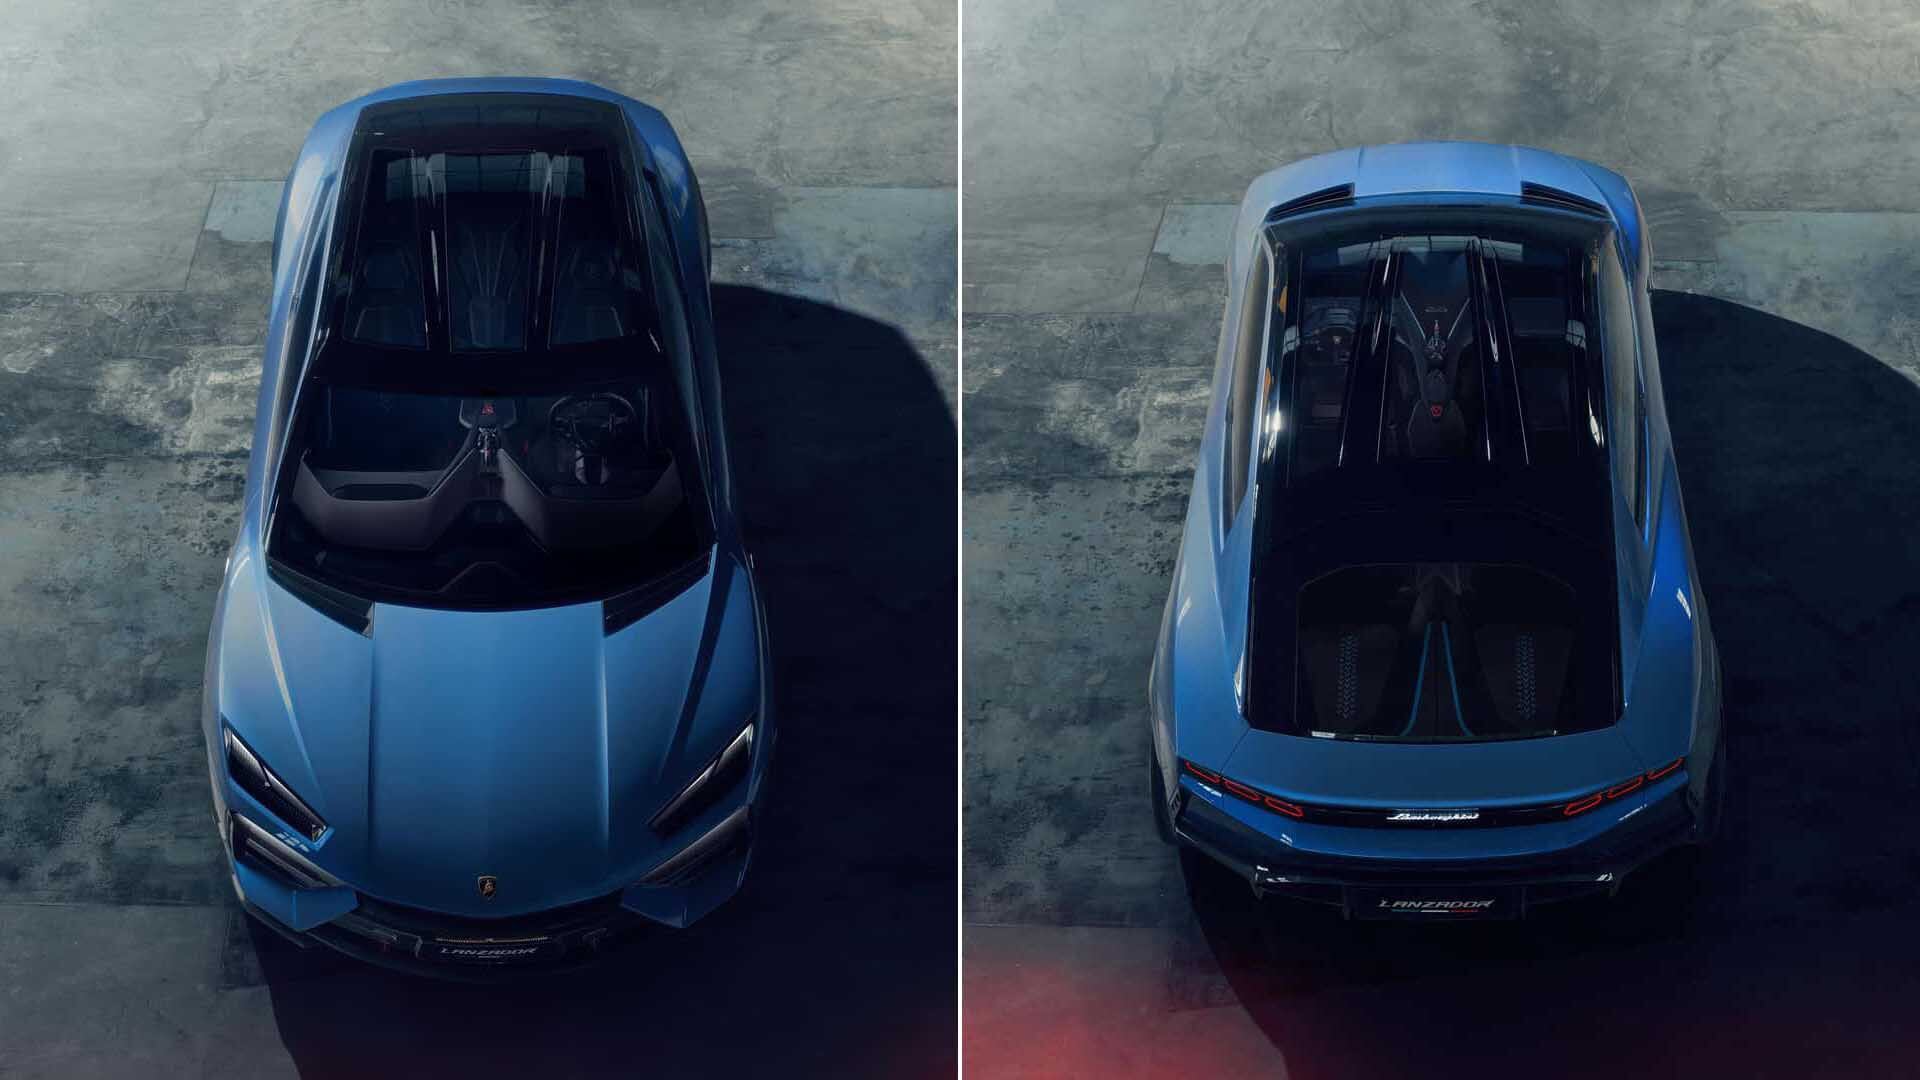 Se lo considera un Ultra GT, un nuevo segmento de automóviles a los que muchas marcas están dirigiendo sus proyectos